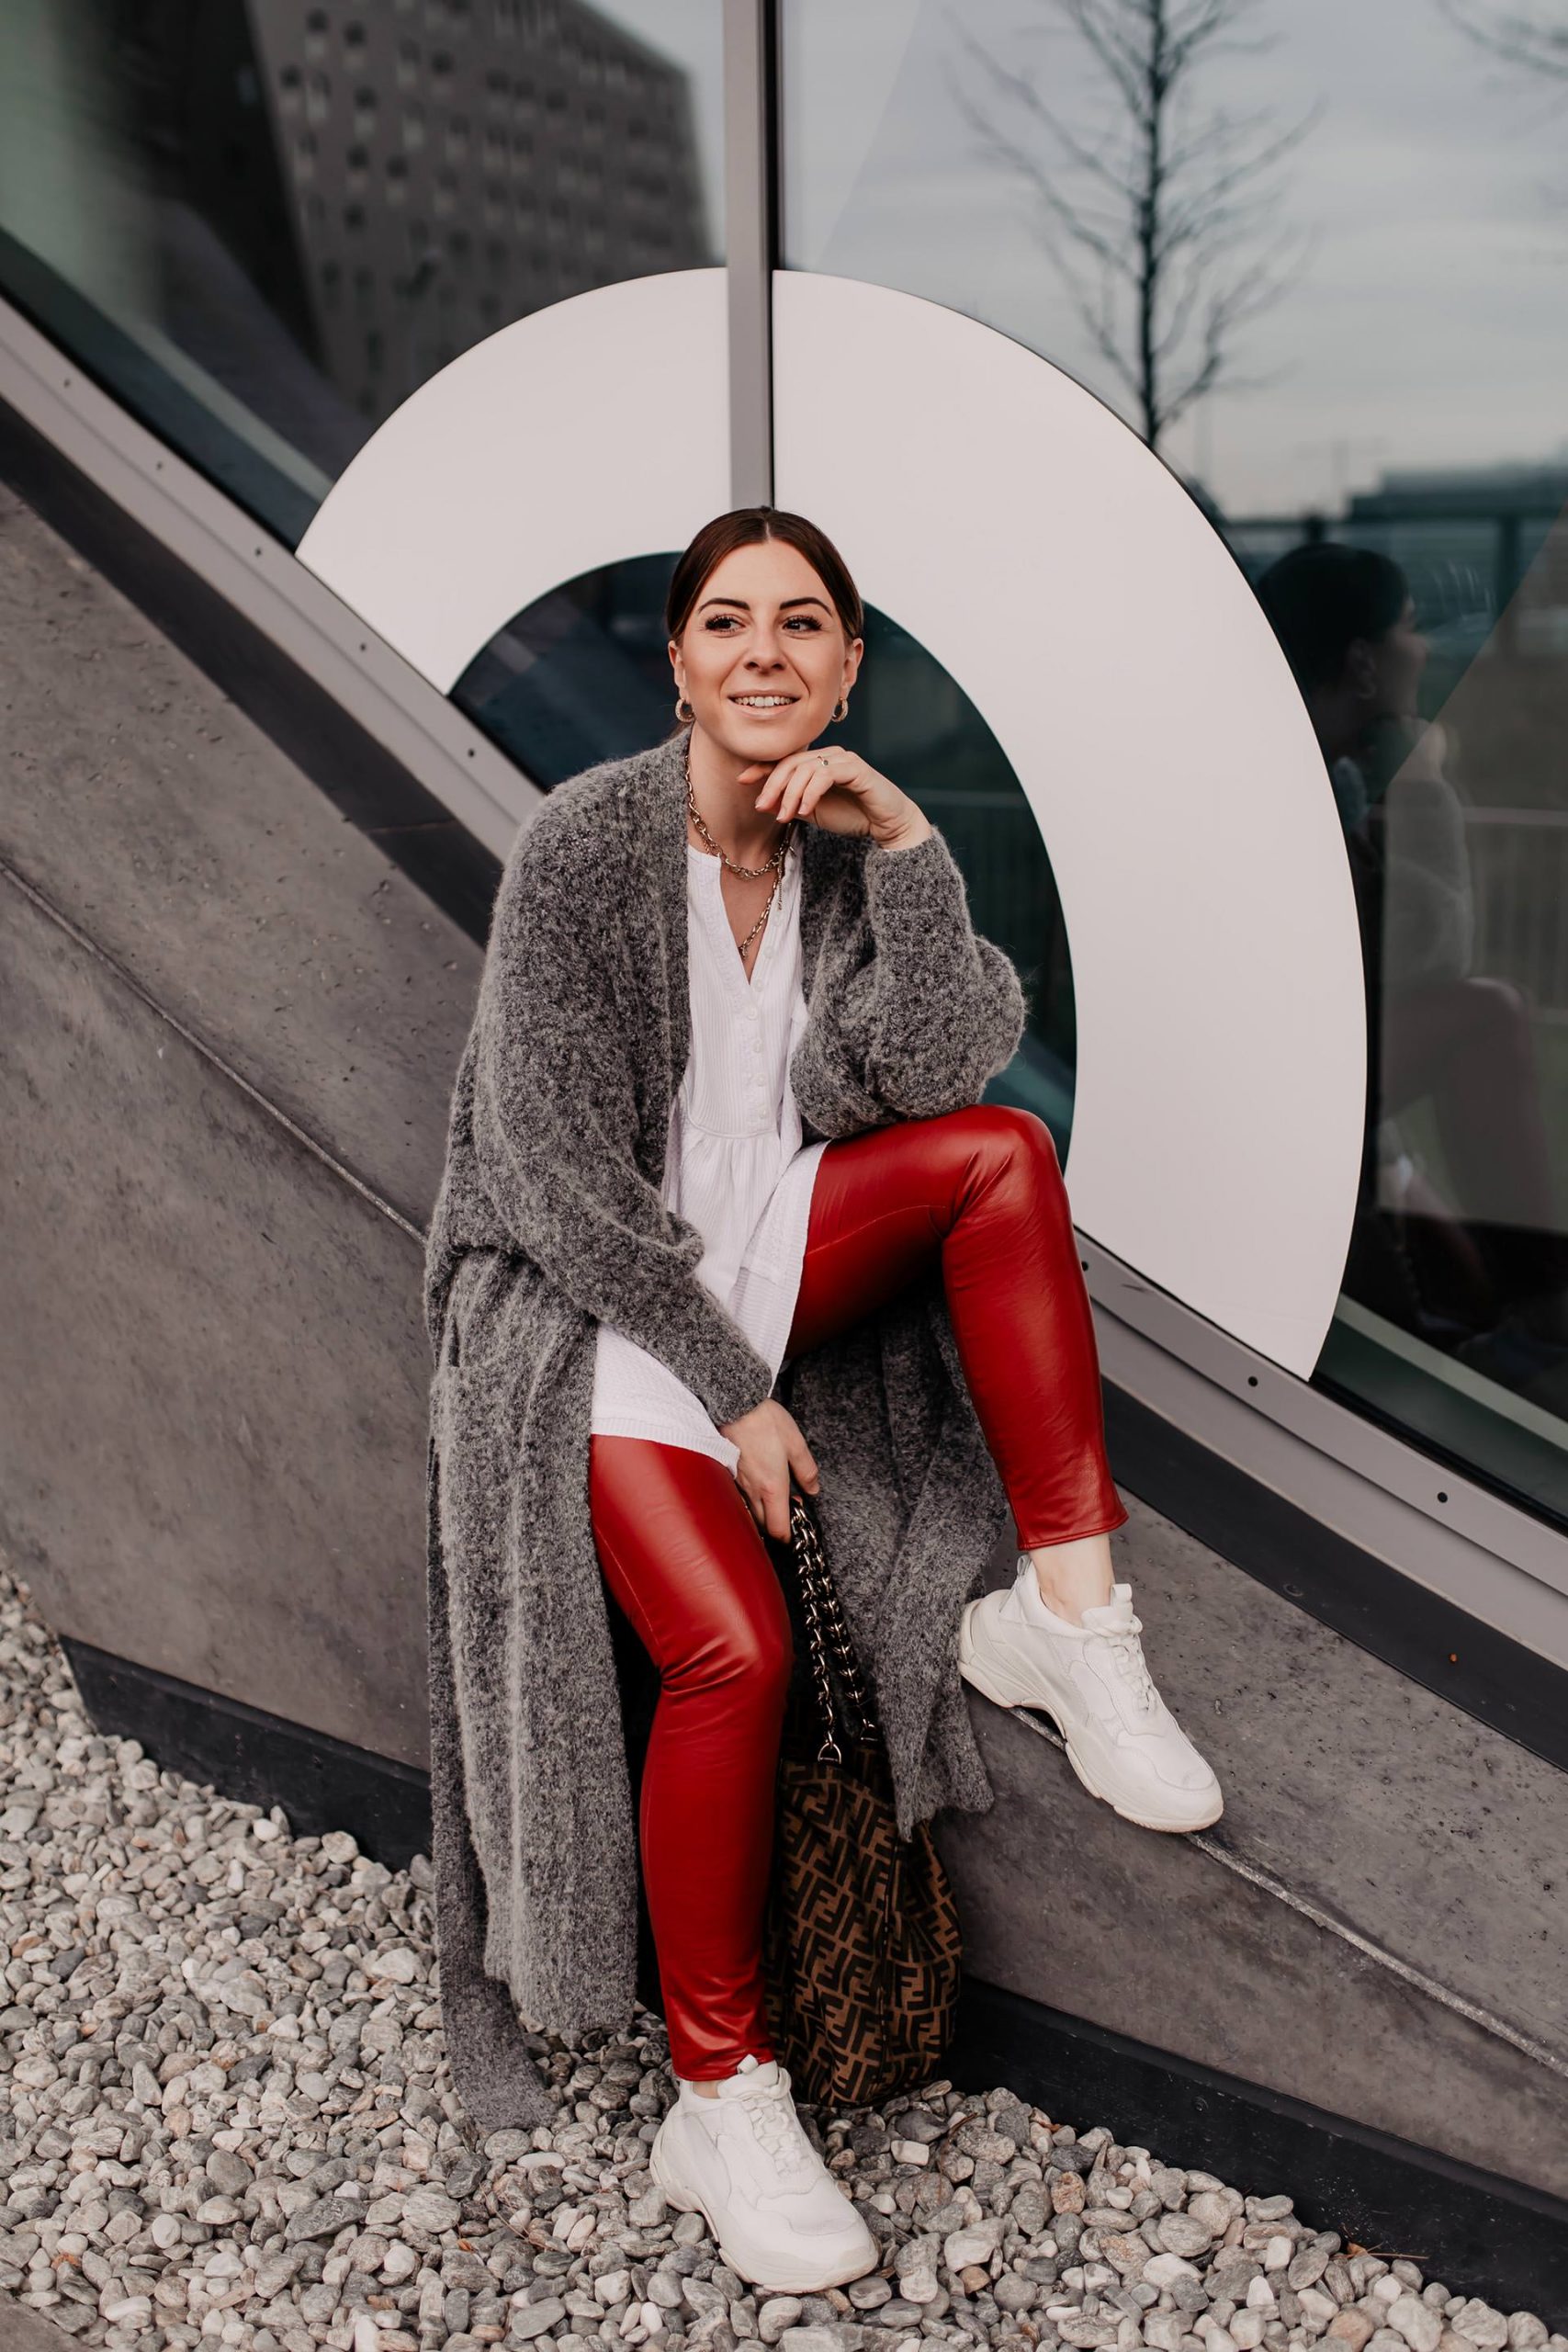 Du willst eine rote Lederhose kombinieren? Am Modeblog verrate ich dir, worauf du achten solltest und wie dir schöne Outfits für den Alltag gelingen! www.whoismocca.com #lederhose #modetrends #outfitoftheday